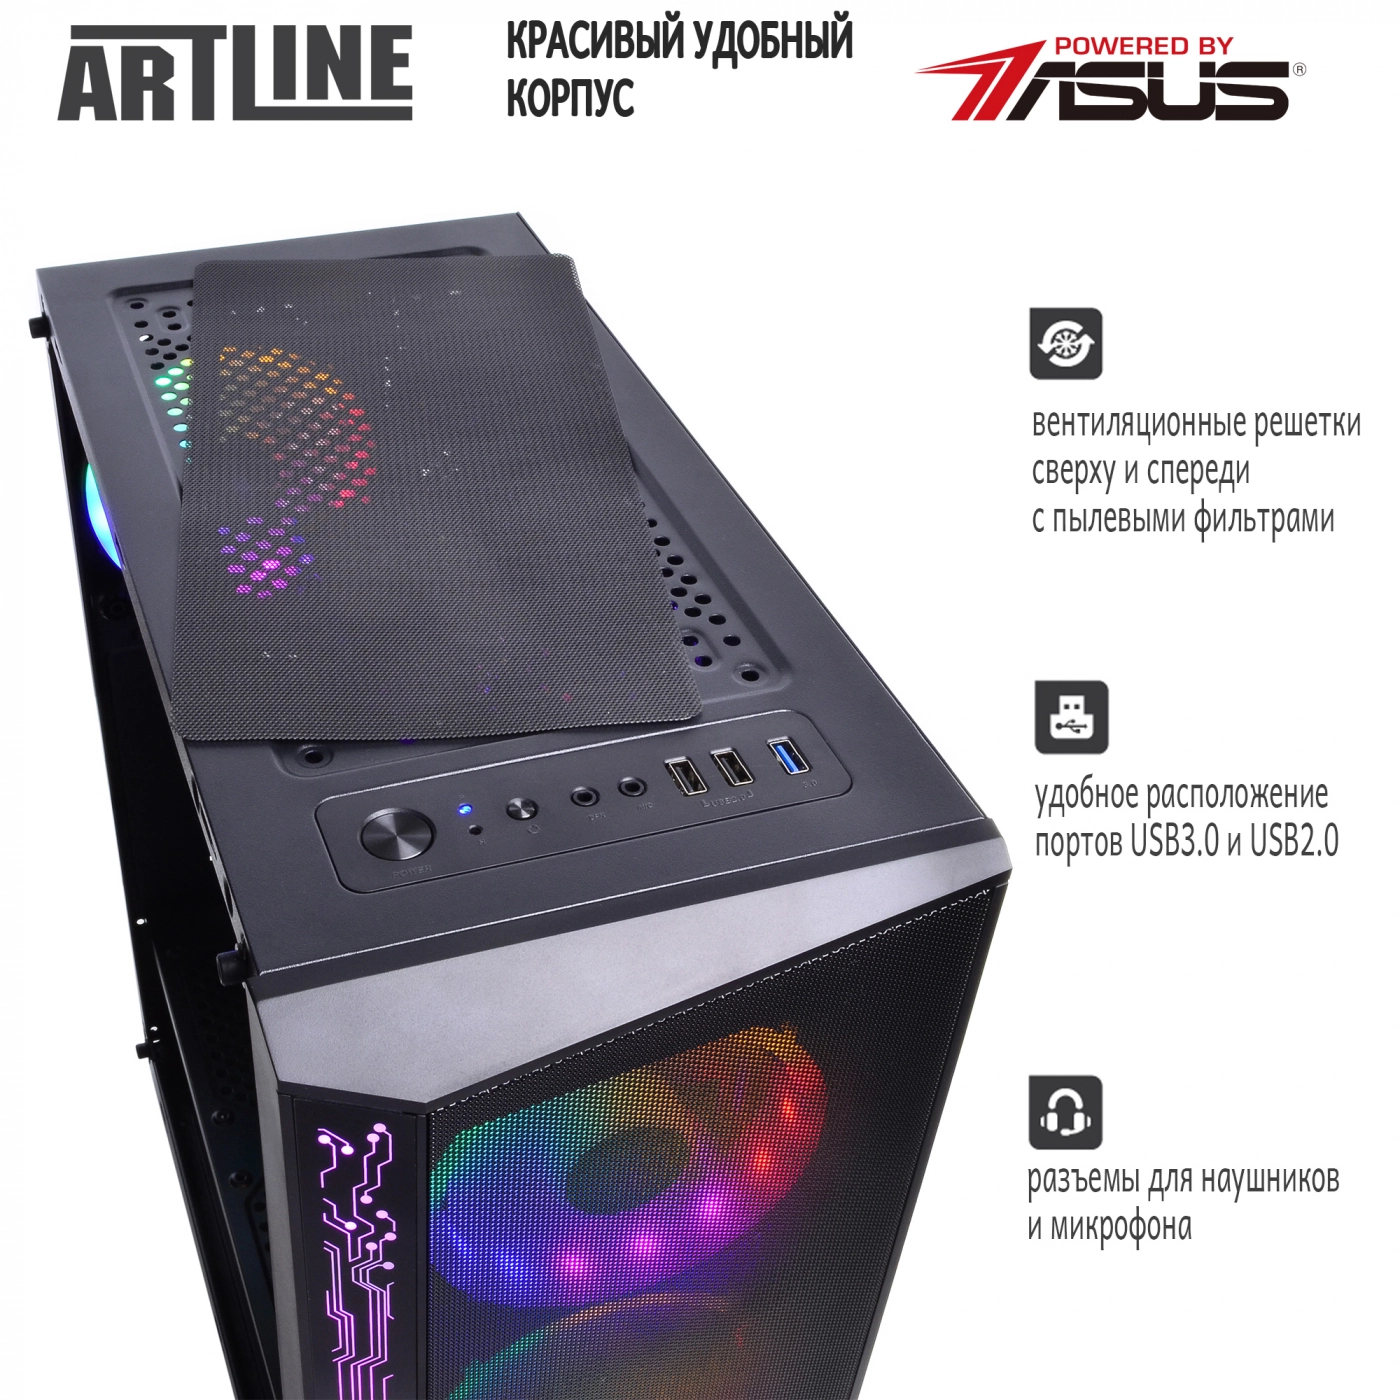 Купить Компьютер ARTLINE Gaming X55v07 - фото 4